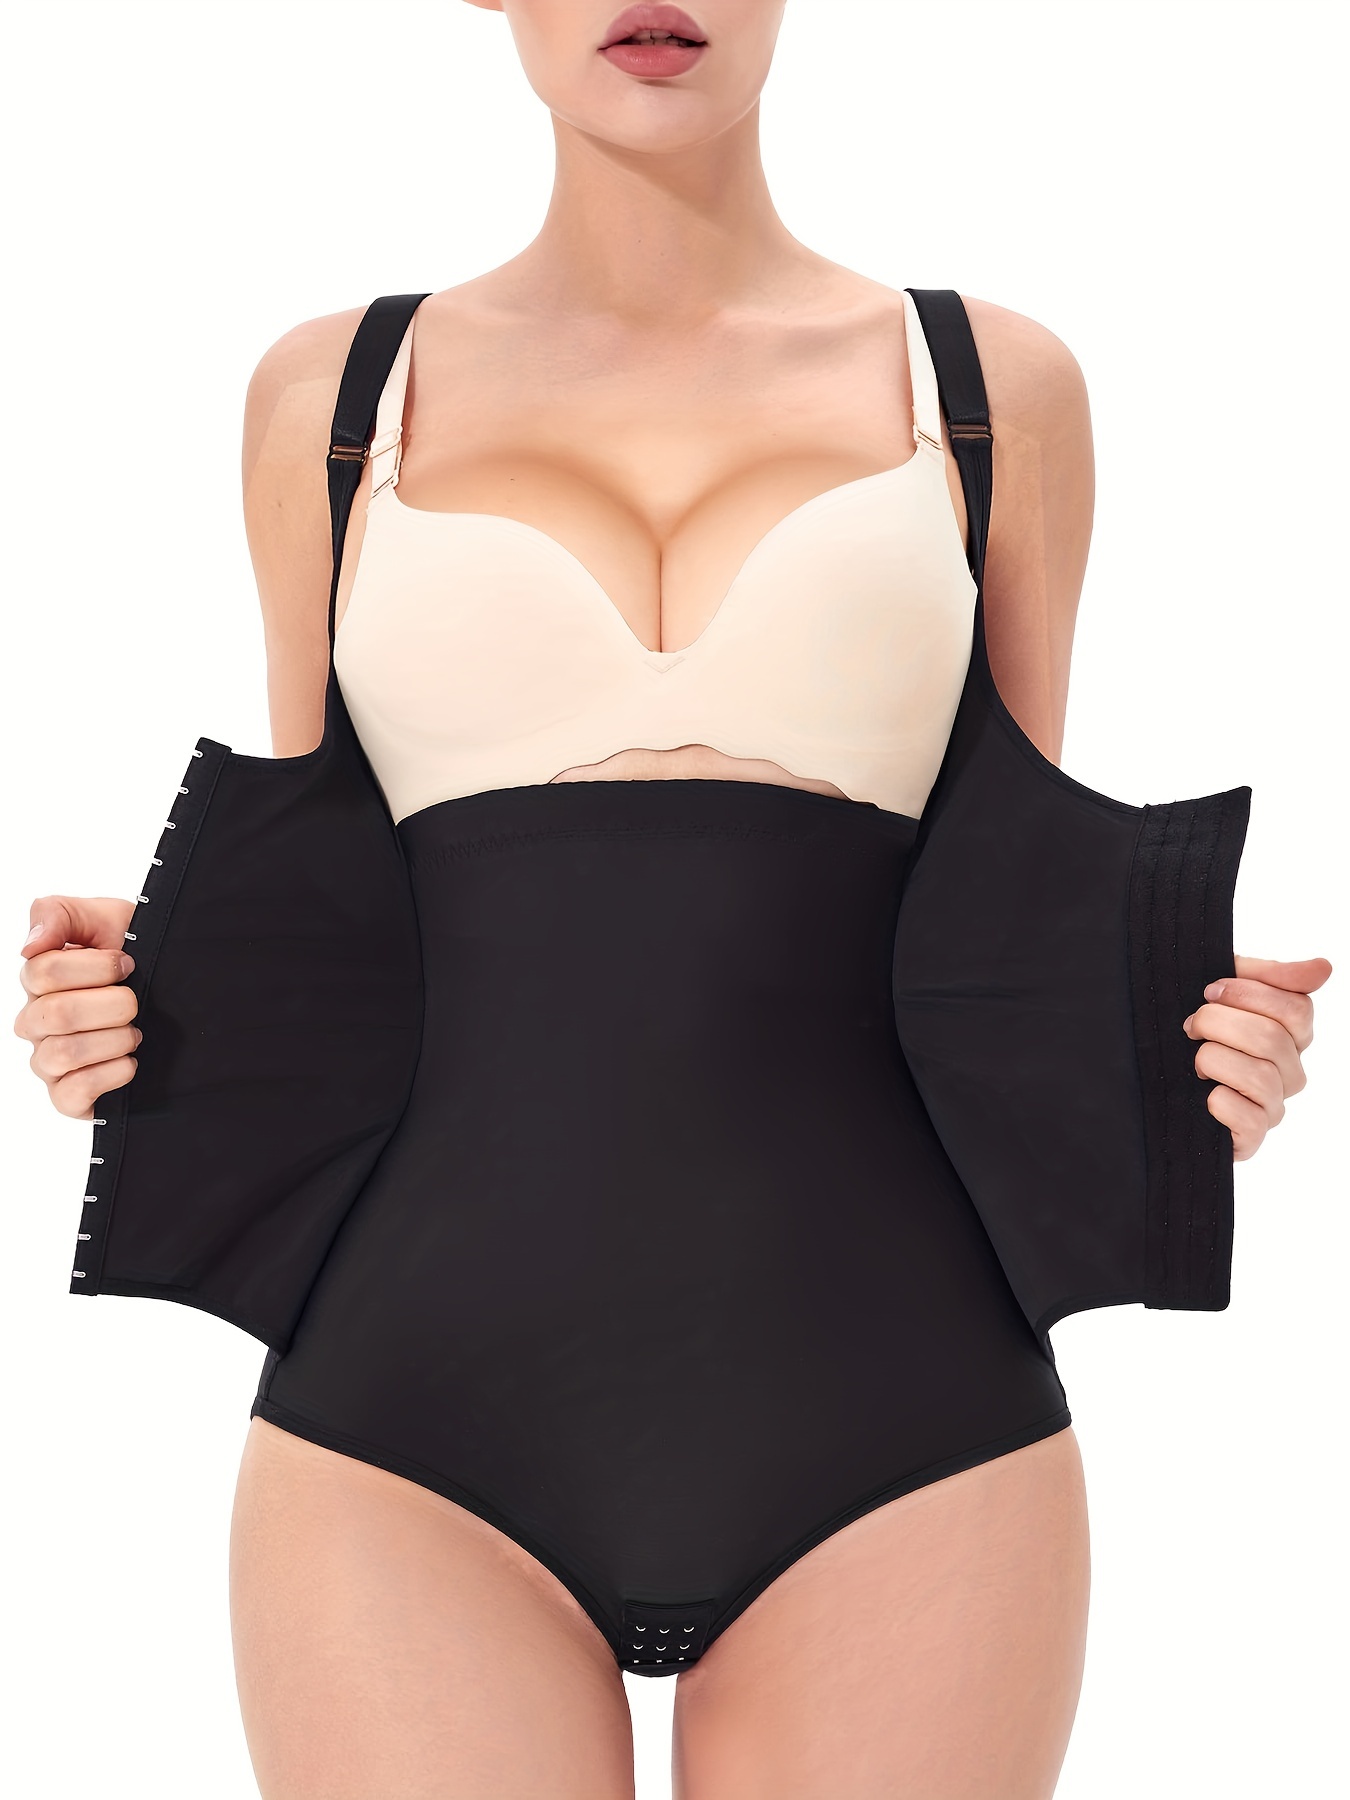 SCARBORO Open Bust Body Shaper, Tummy Control Slimming Adjustable Shaping  Bodysuit, Women's Underwear & Shapewear